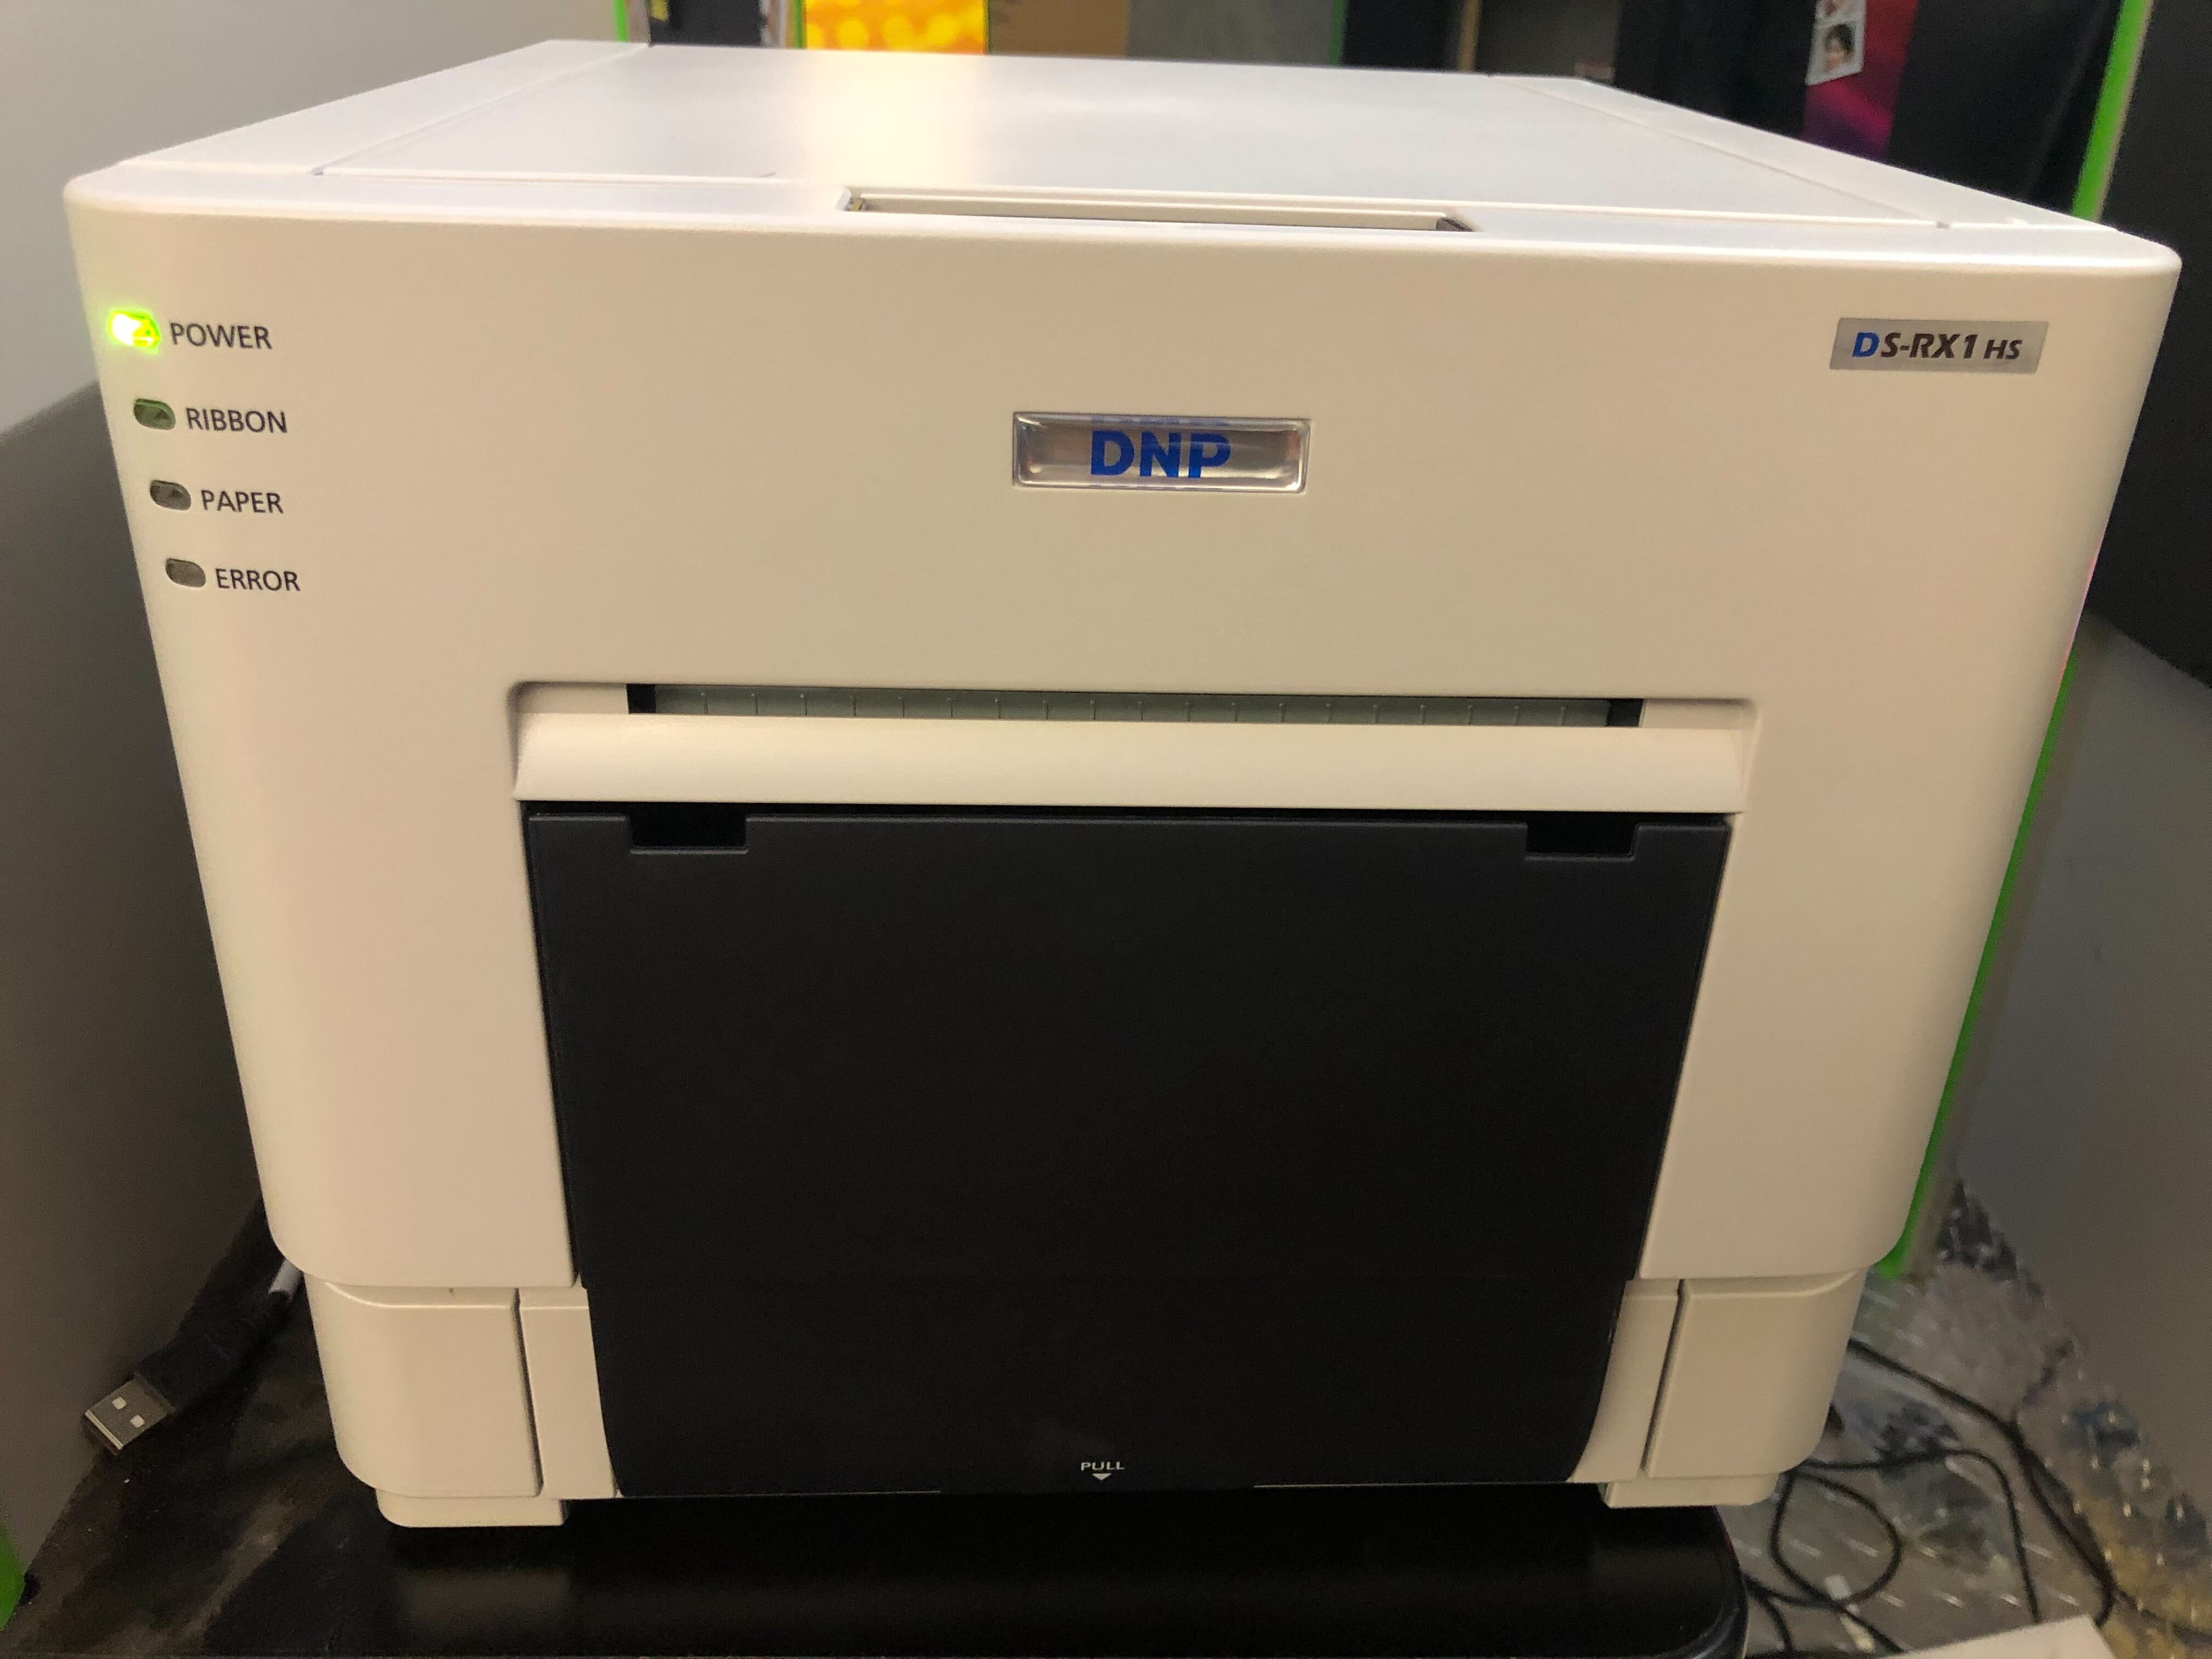 DNP RX1 Printer